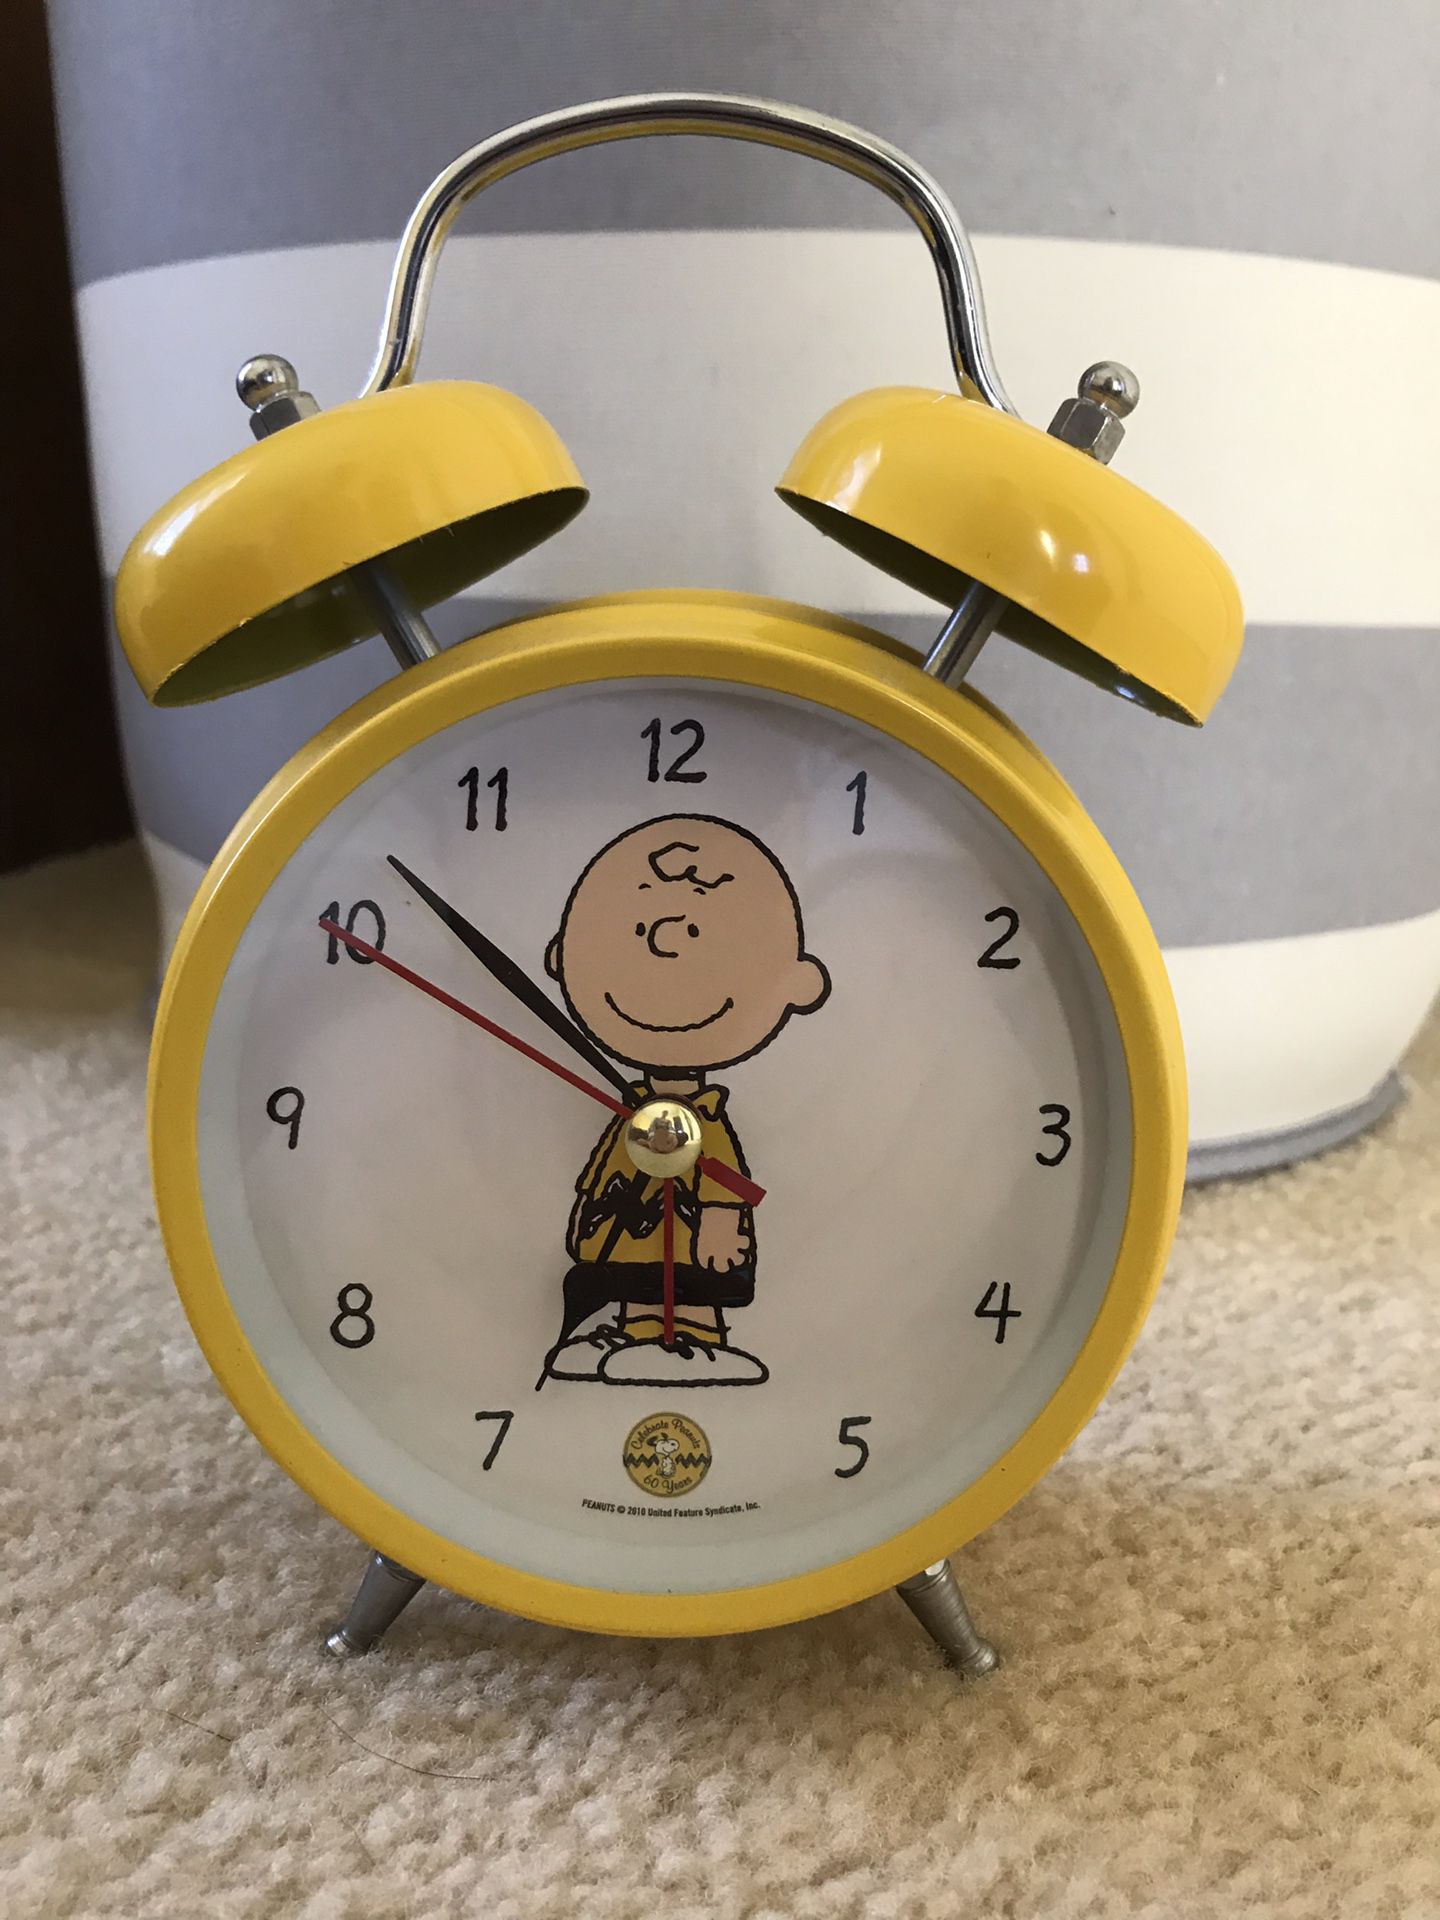 Working Peanuts Alarm Clock